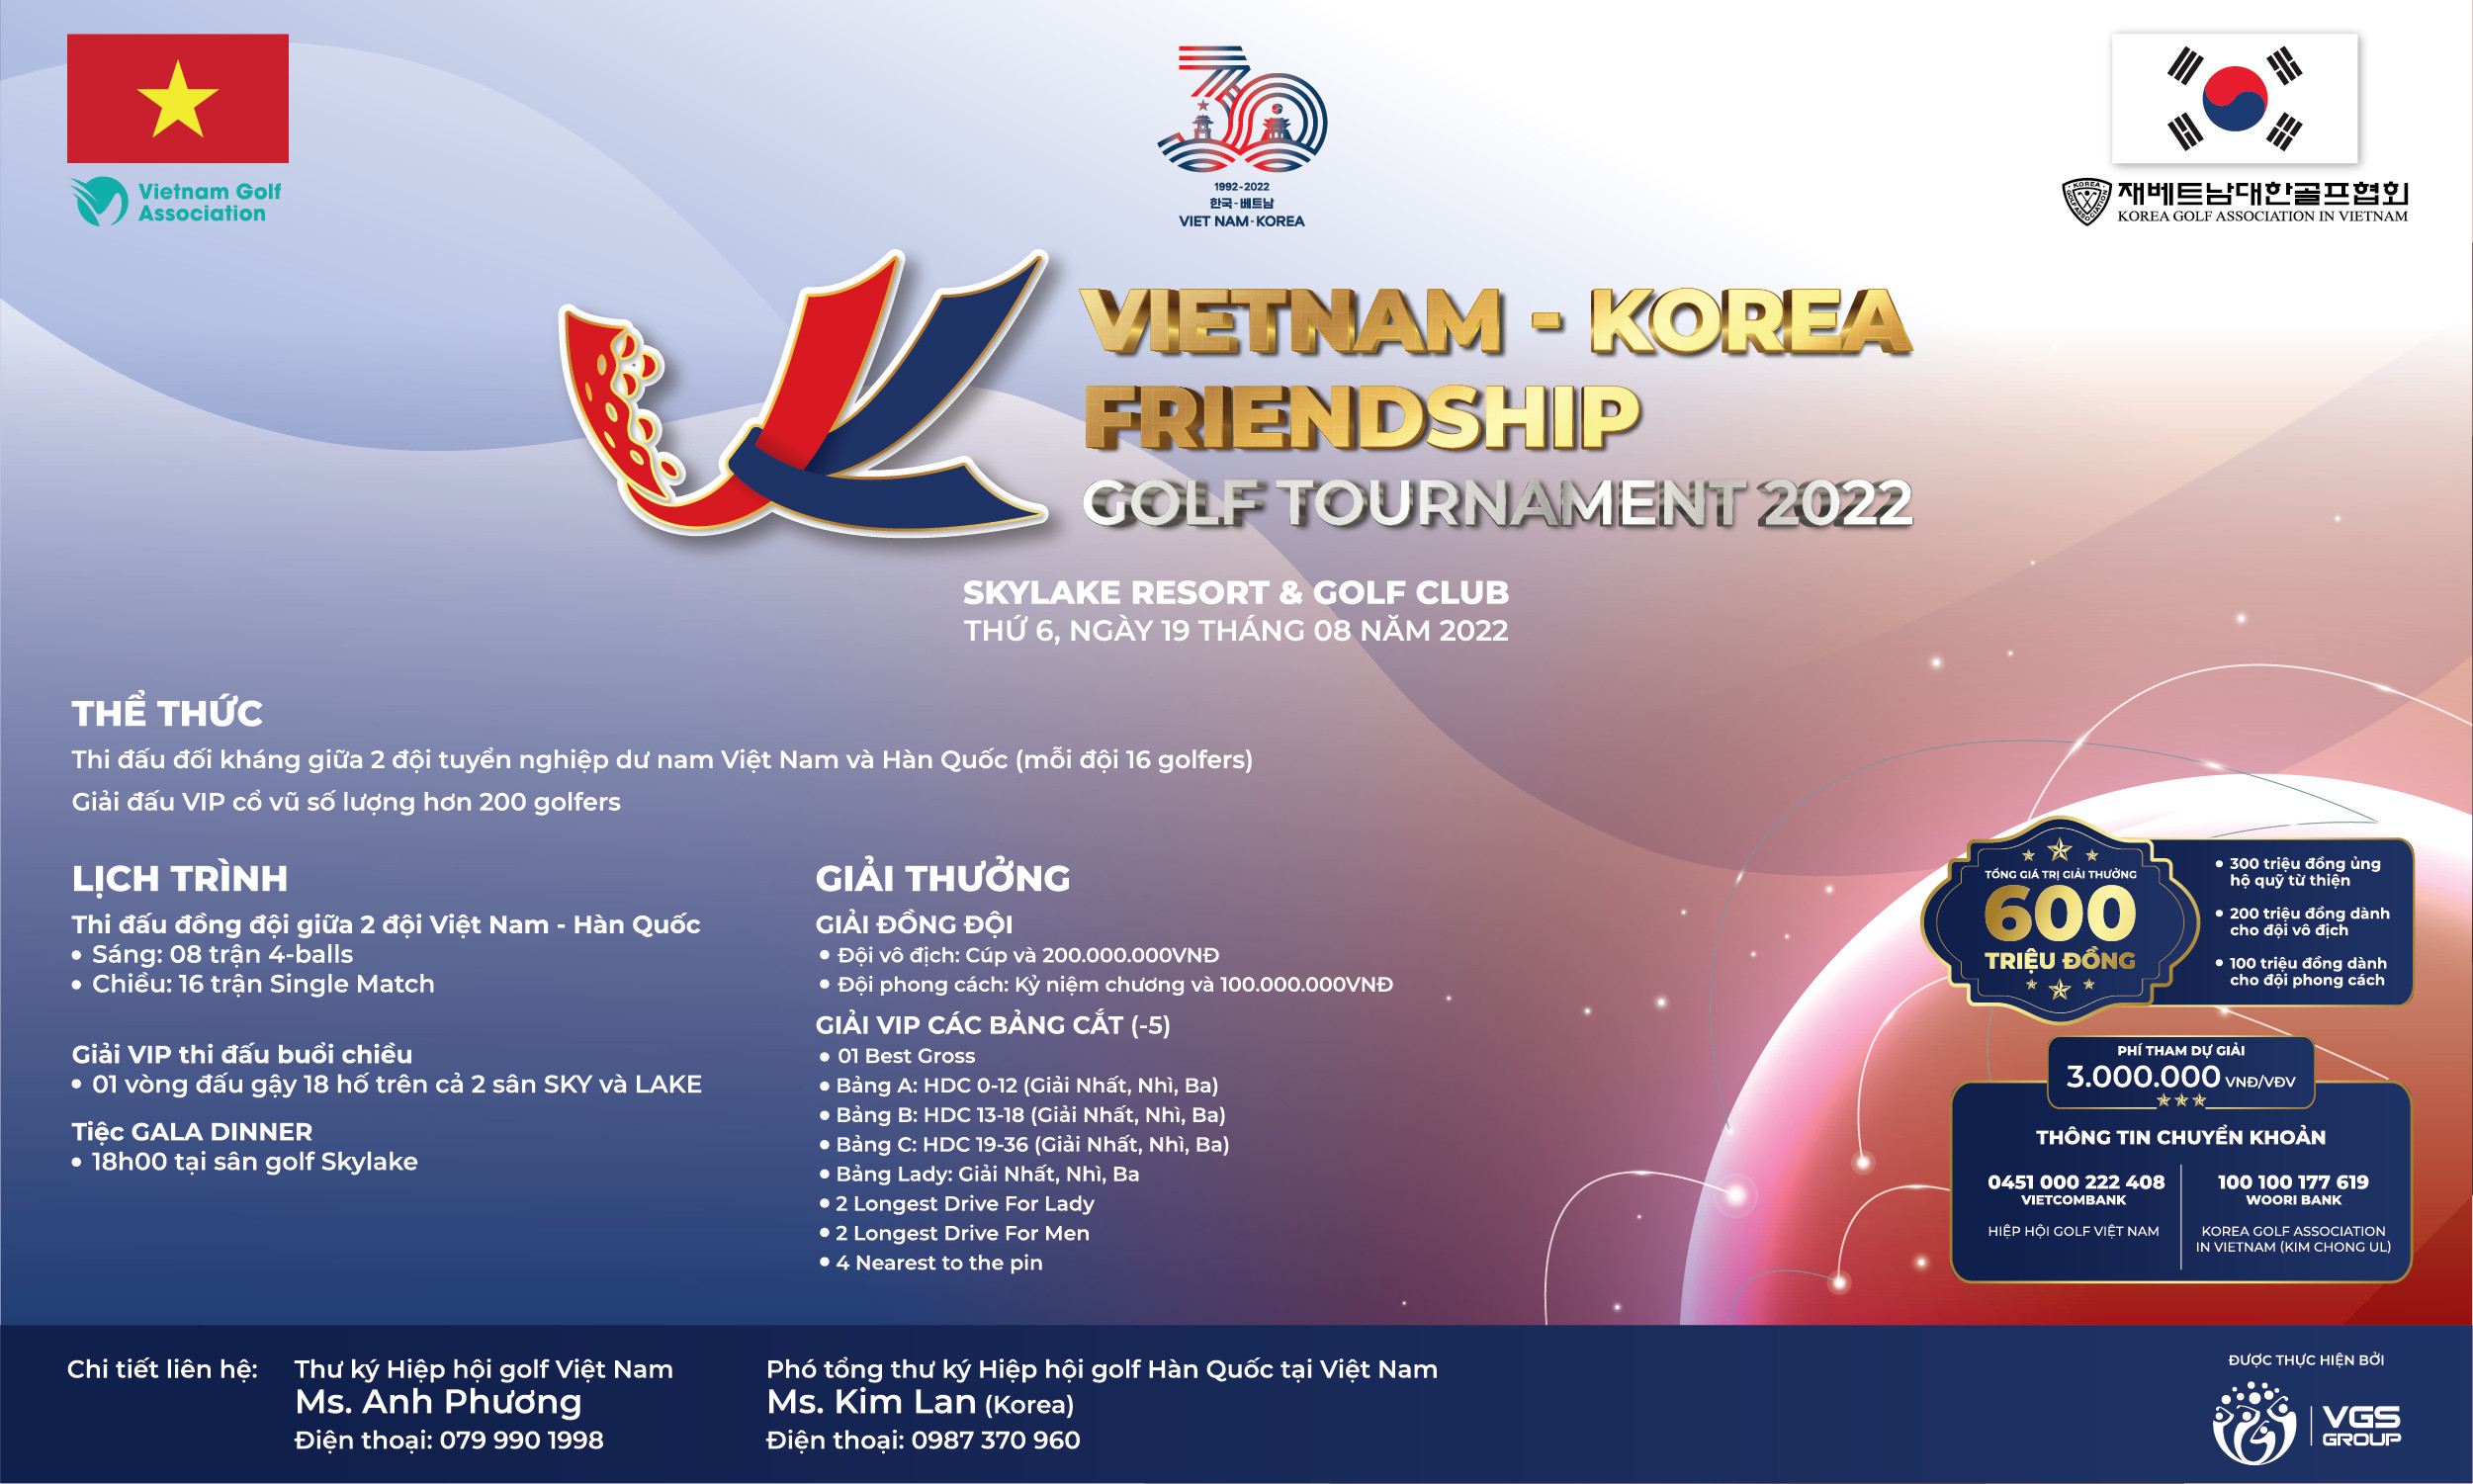 Chính thức mở đơn đăng kí tham dự giải golf hữu nghị Vietnam Korea